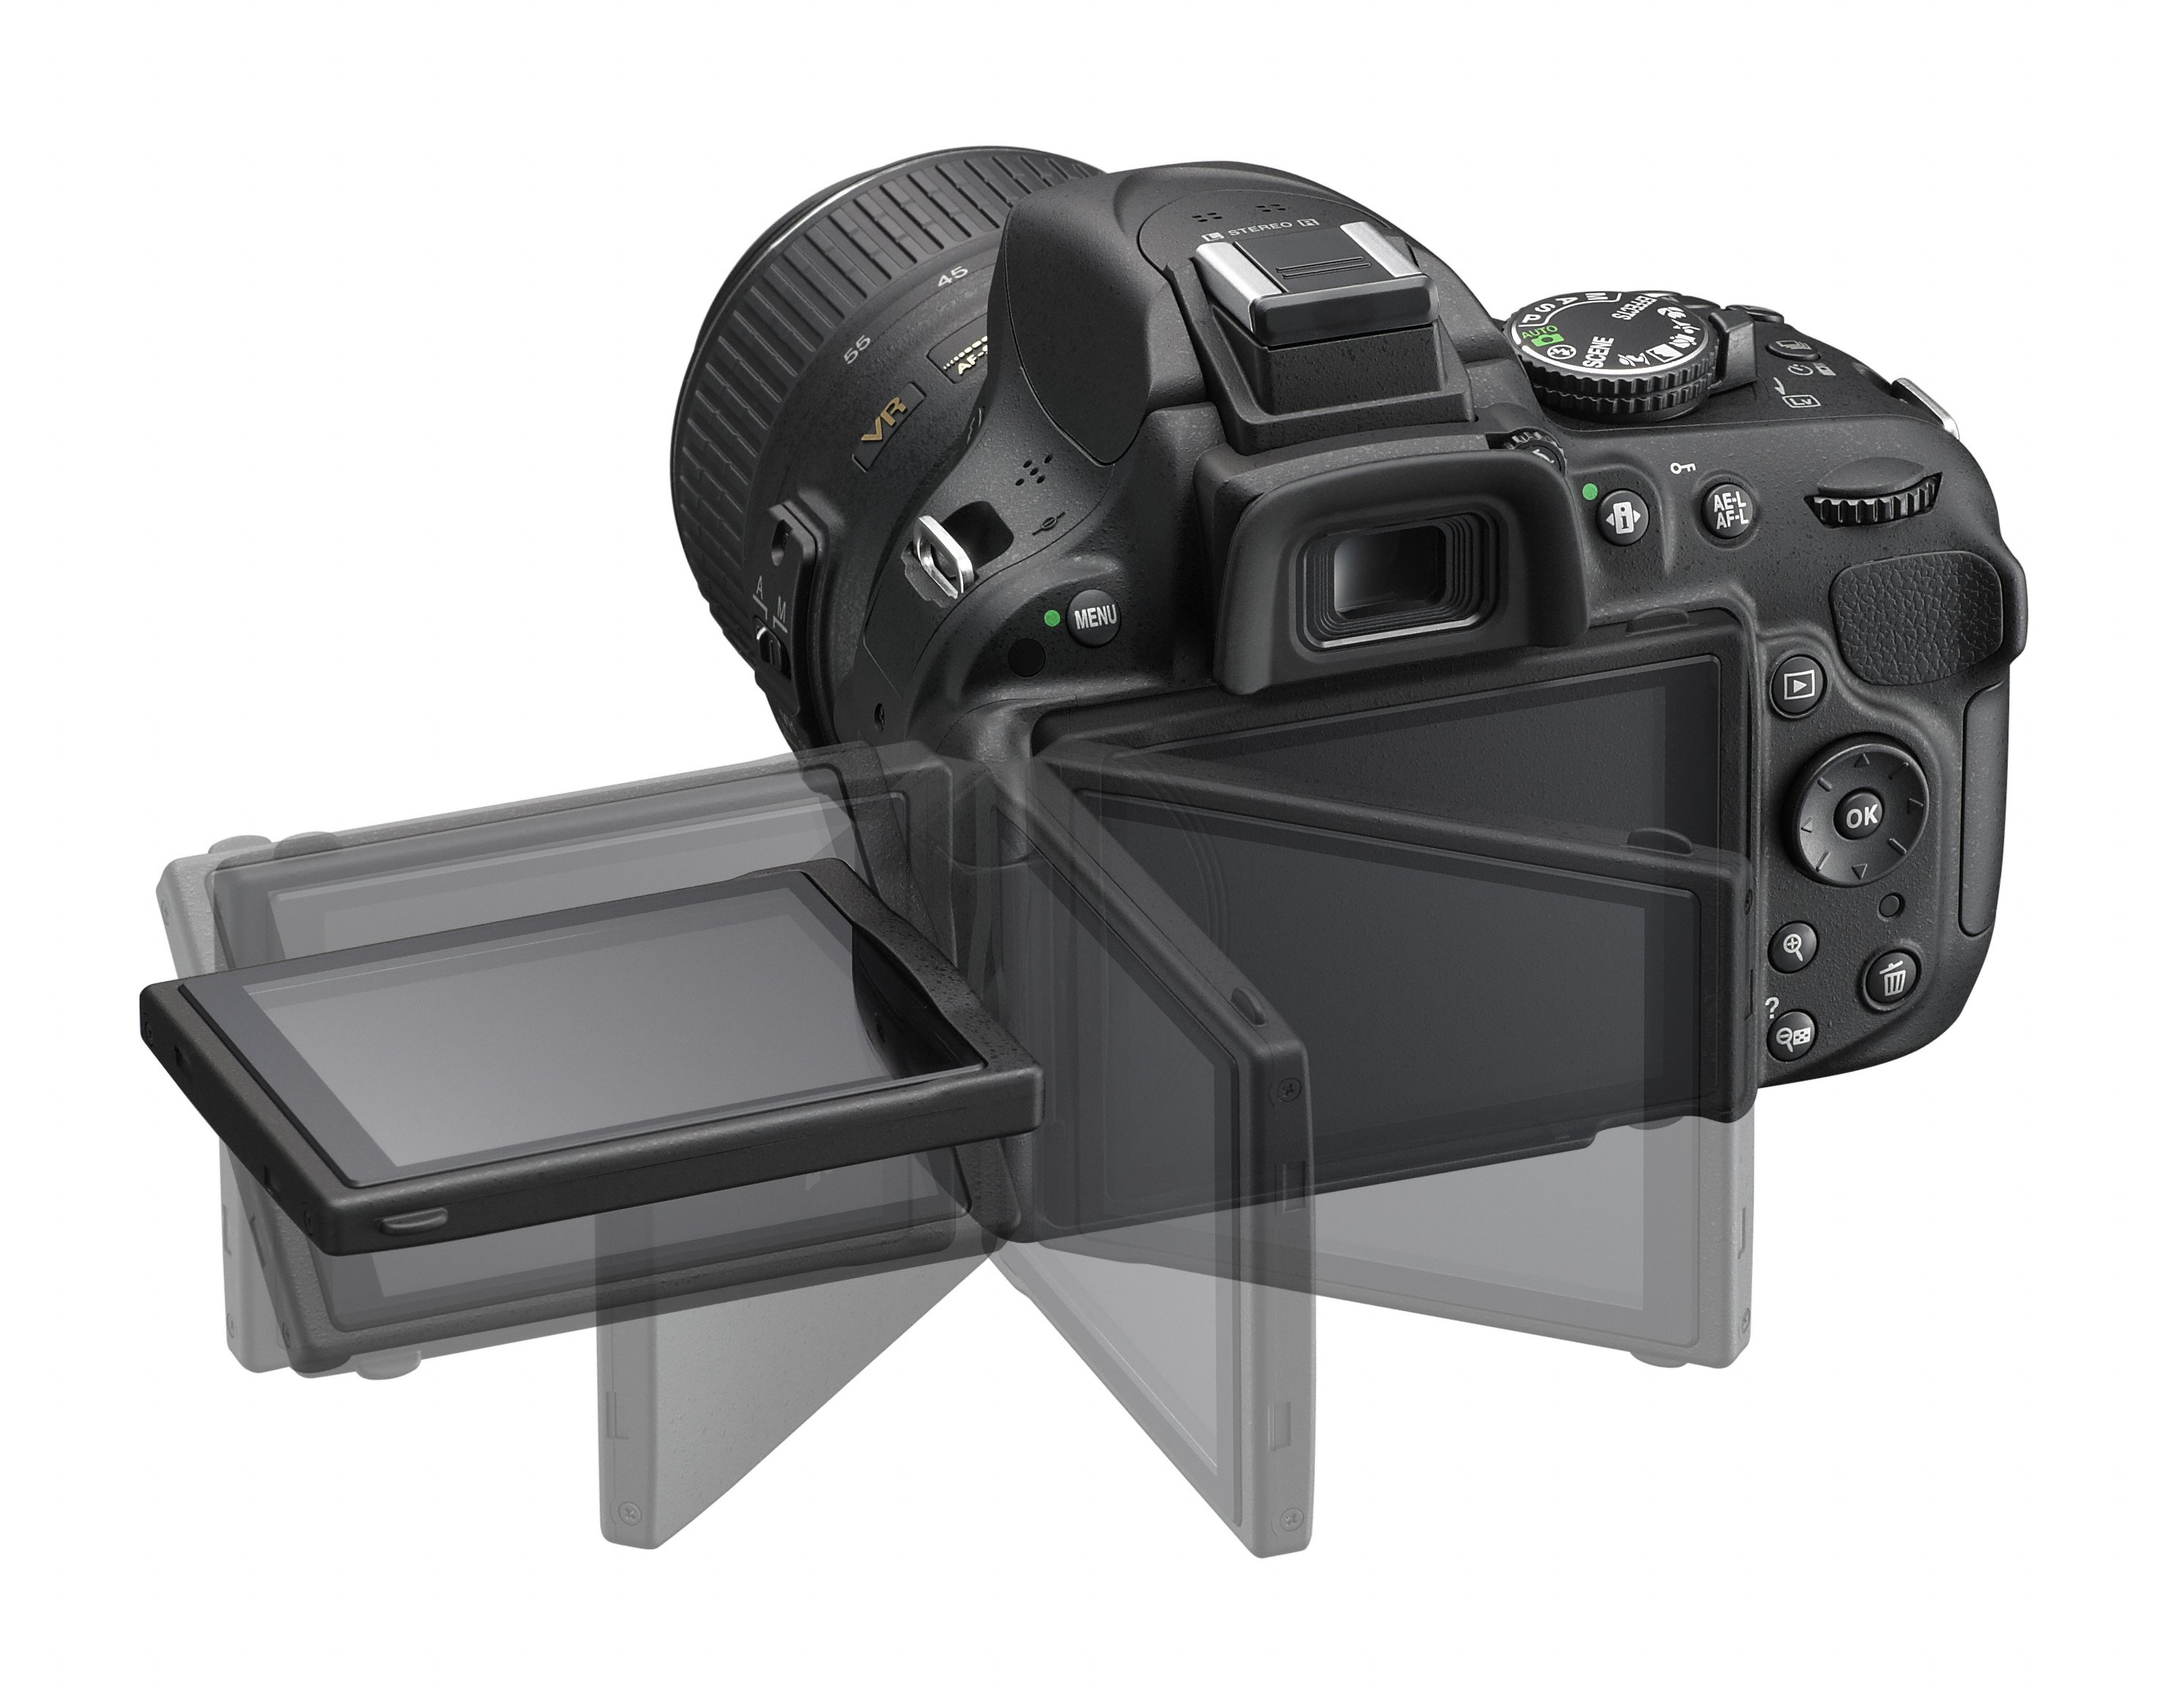 Hệ thống lấy nét tự động 39 điểm hoàn toàn mới được tích hợp trong máy ảnh giá rẻ của Nikon